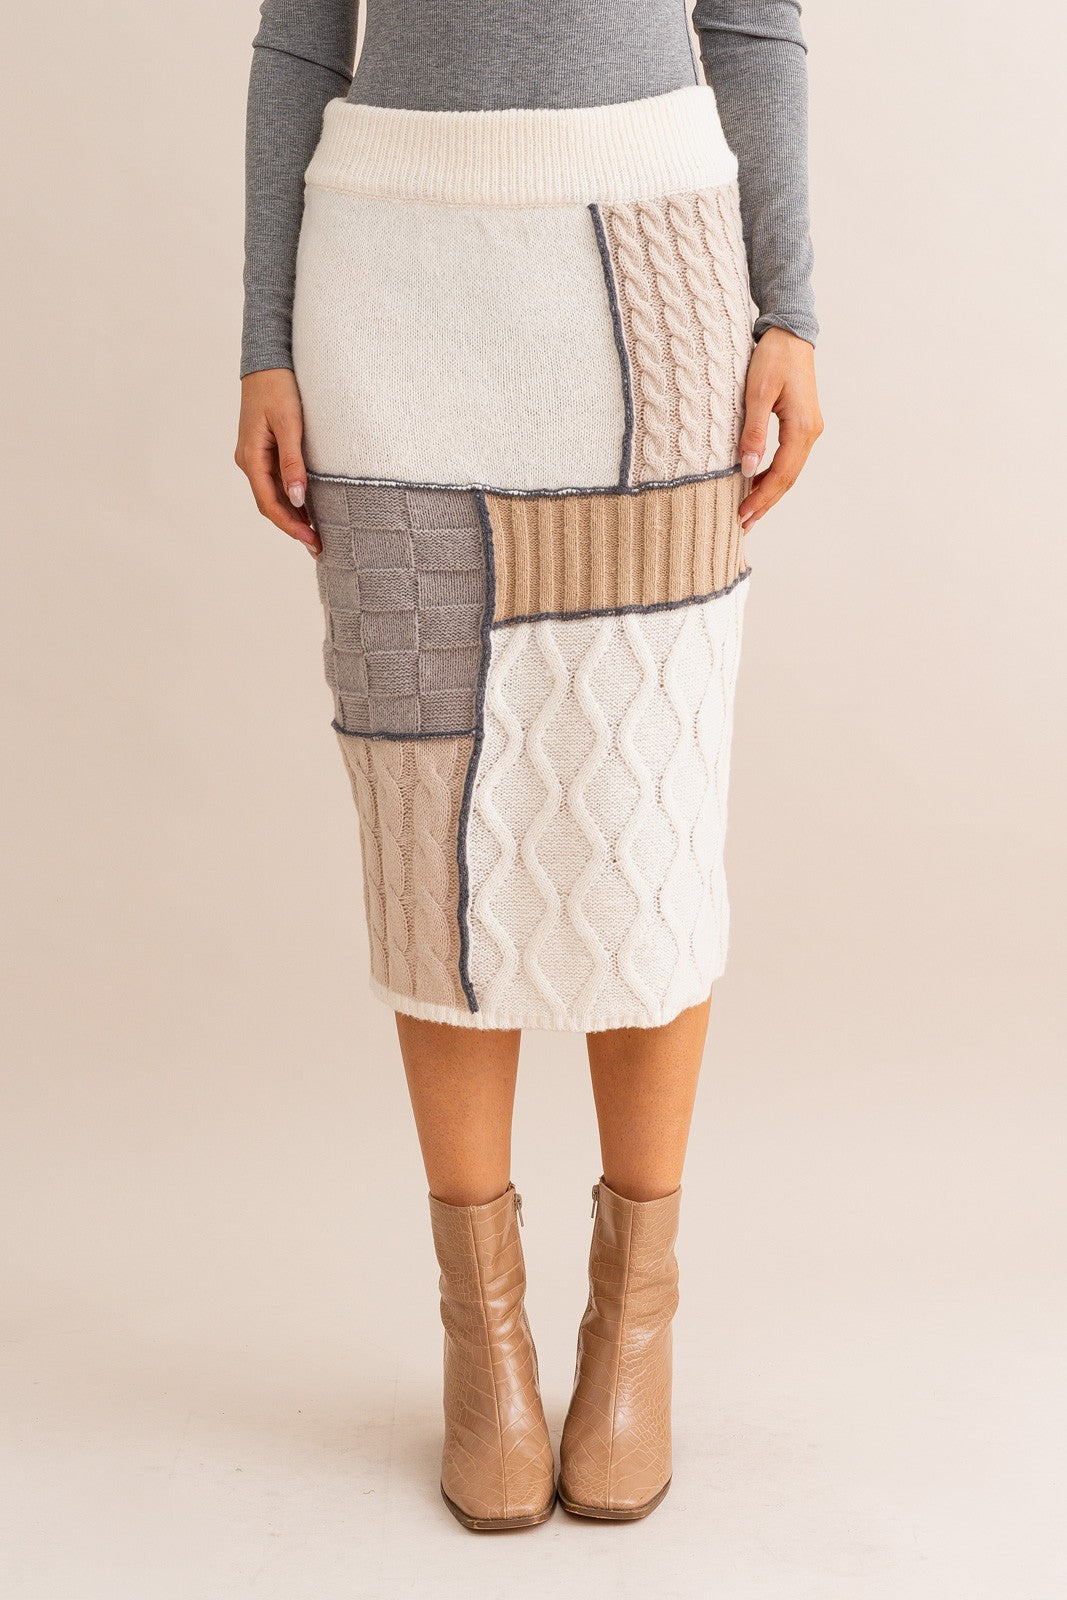 Autumn Breeze Sweater Midi Skirt